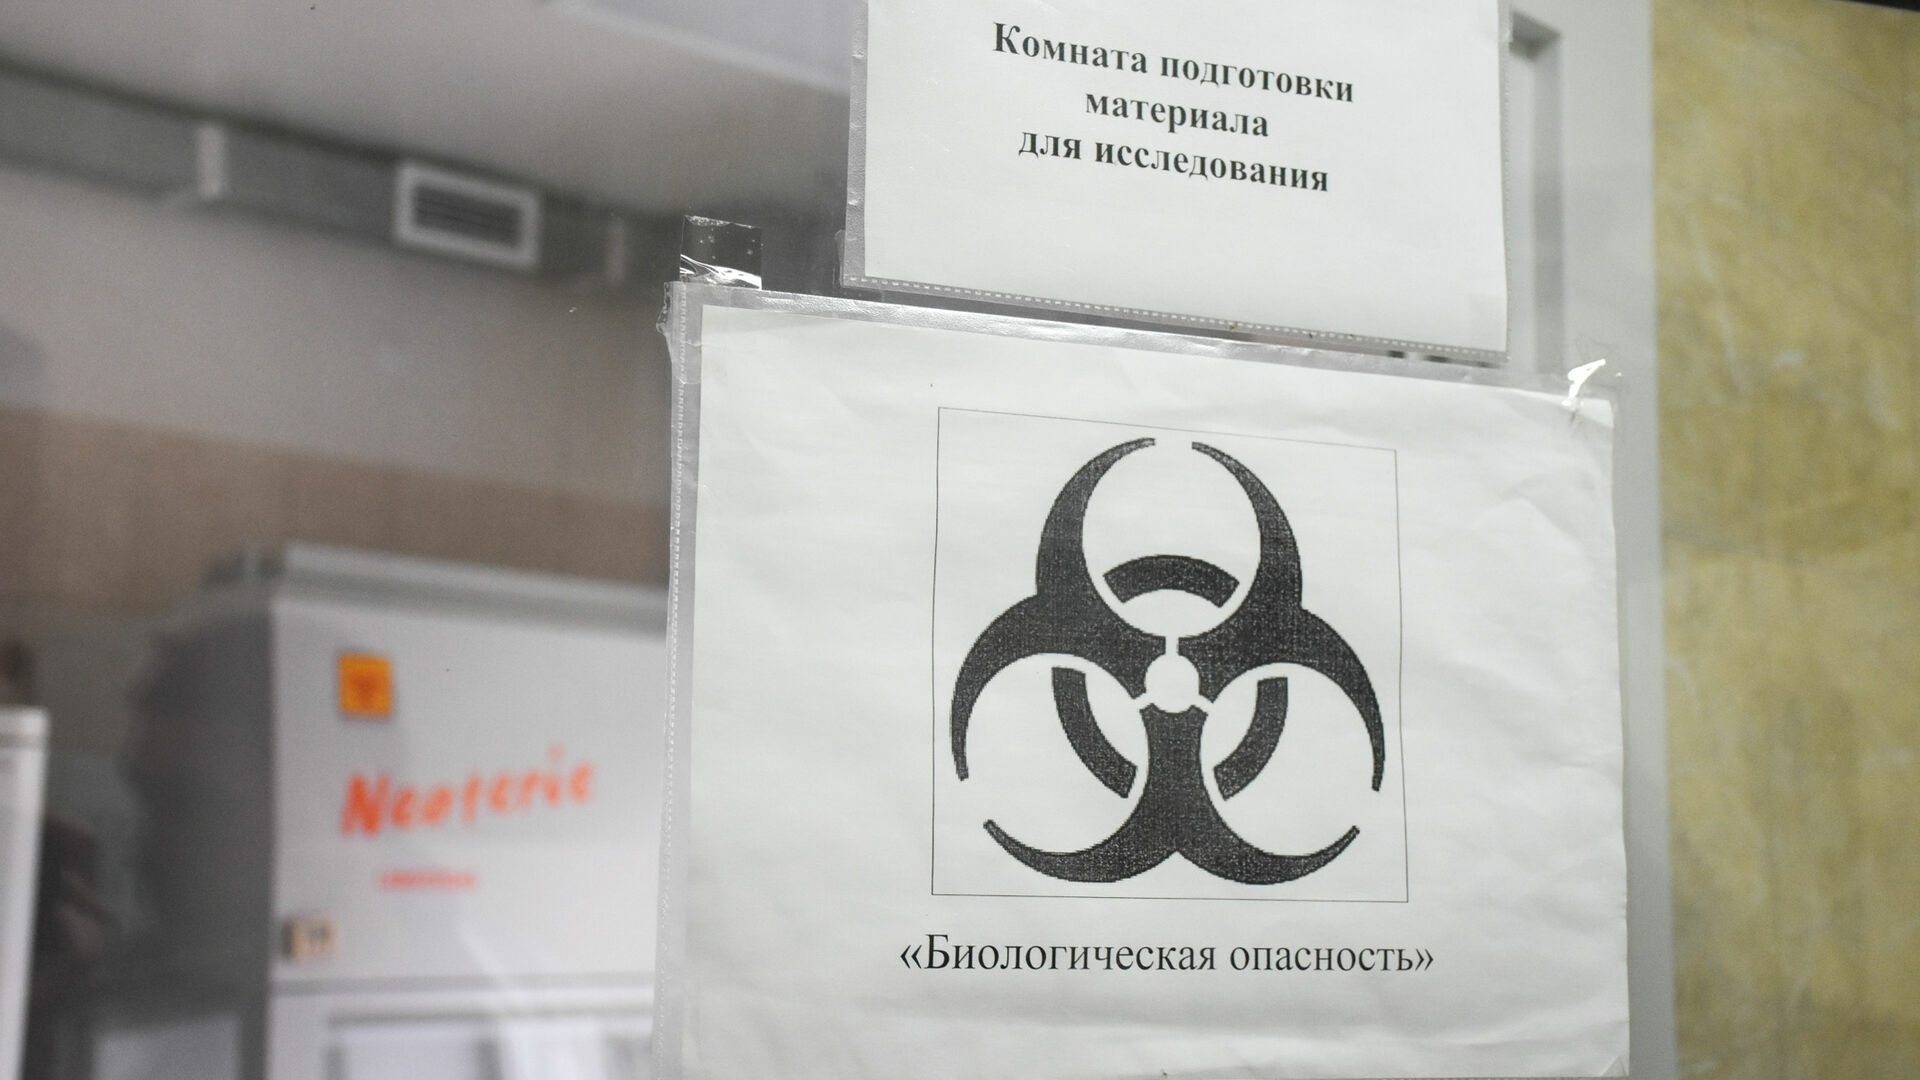 Стало известно состояние работников ВАДа, заболевших коронавирусом в Карелии